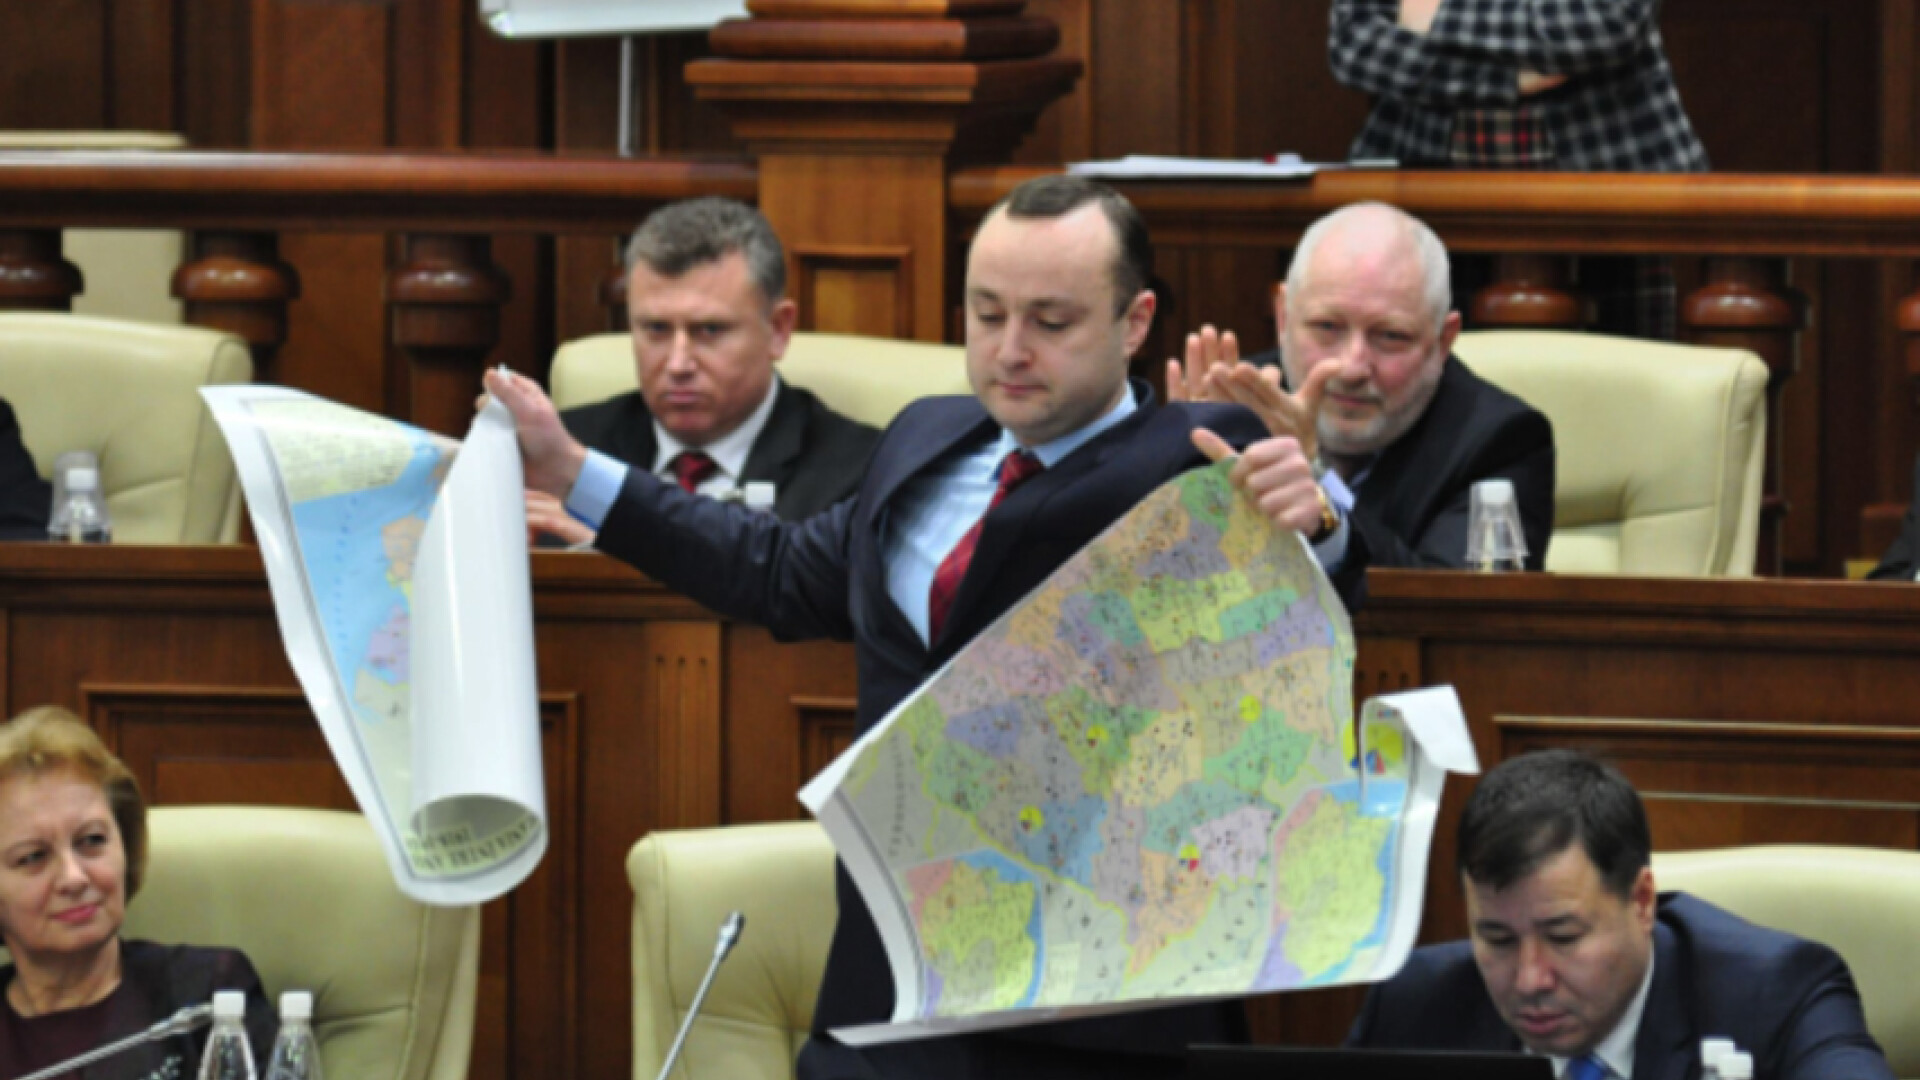 deputat moldovean rupe harta ROmaniei